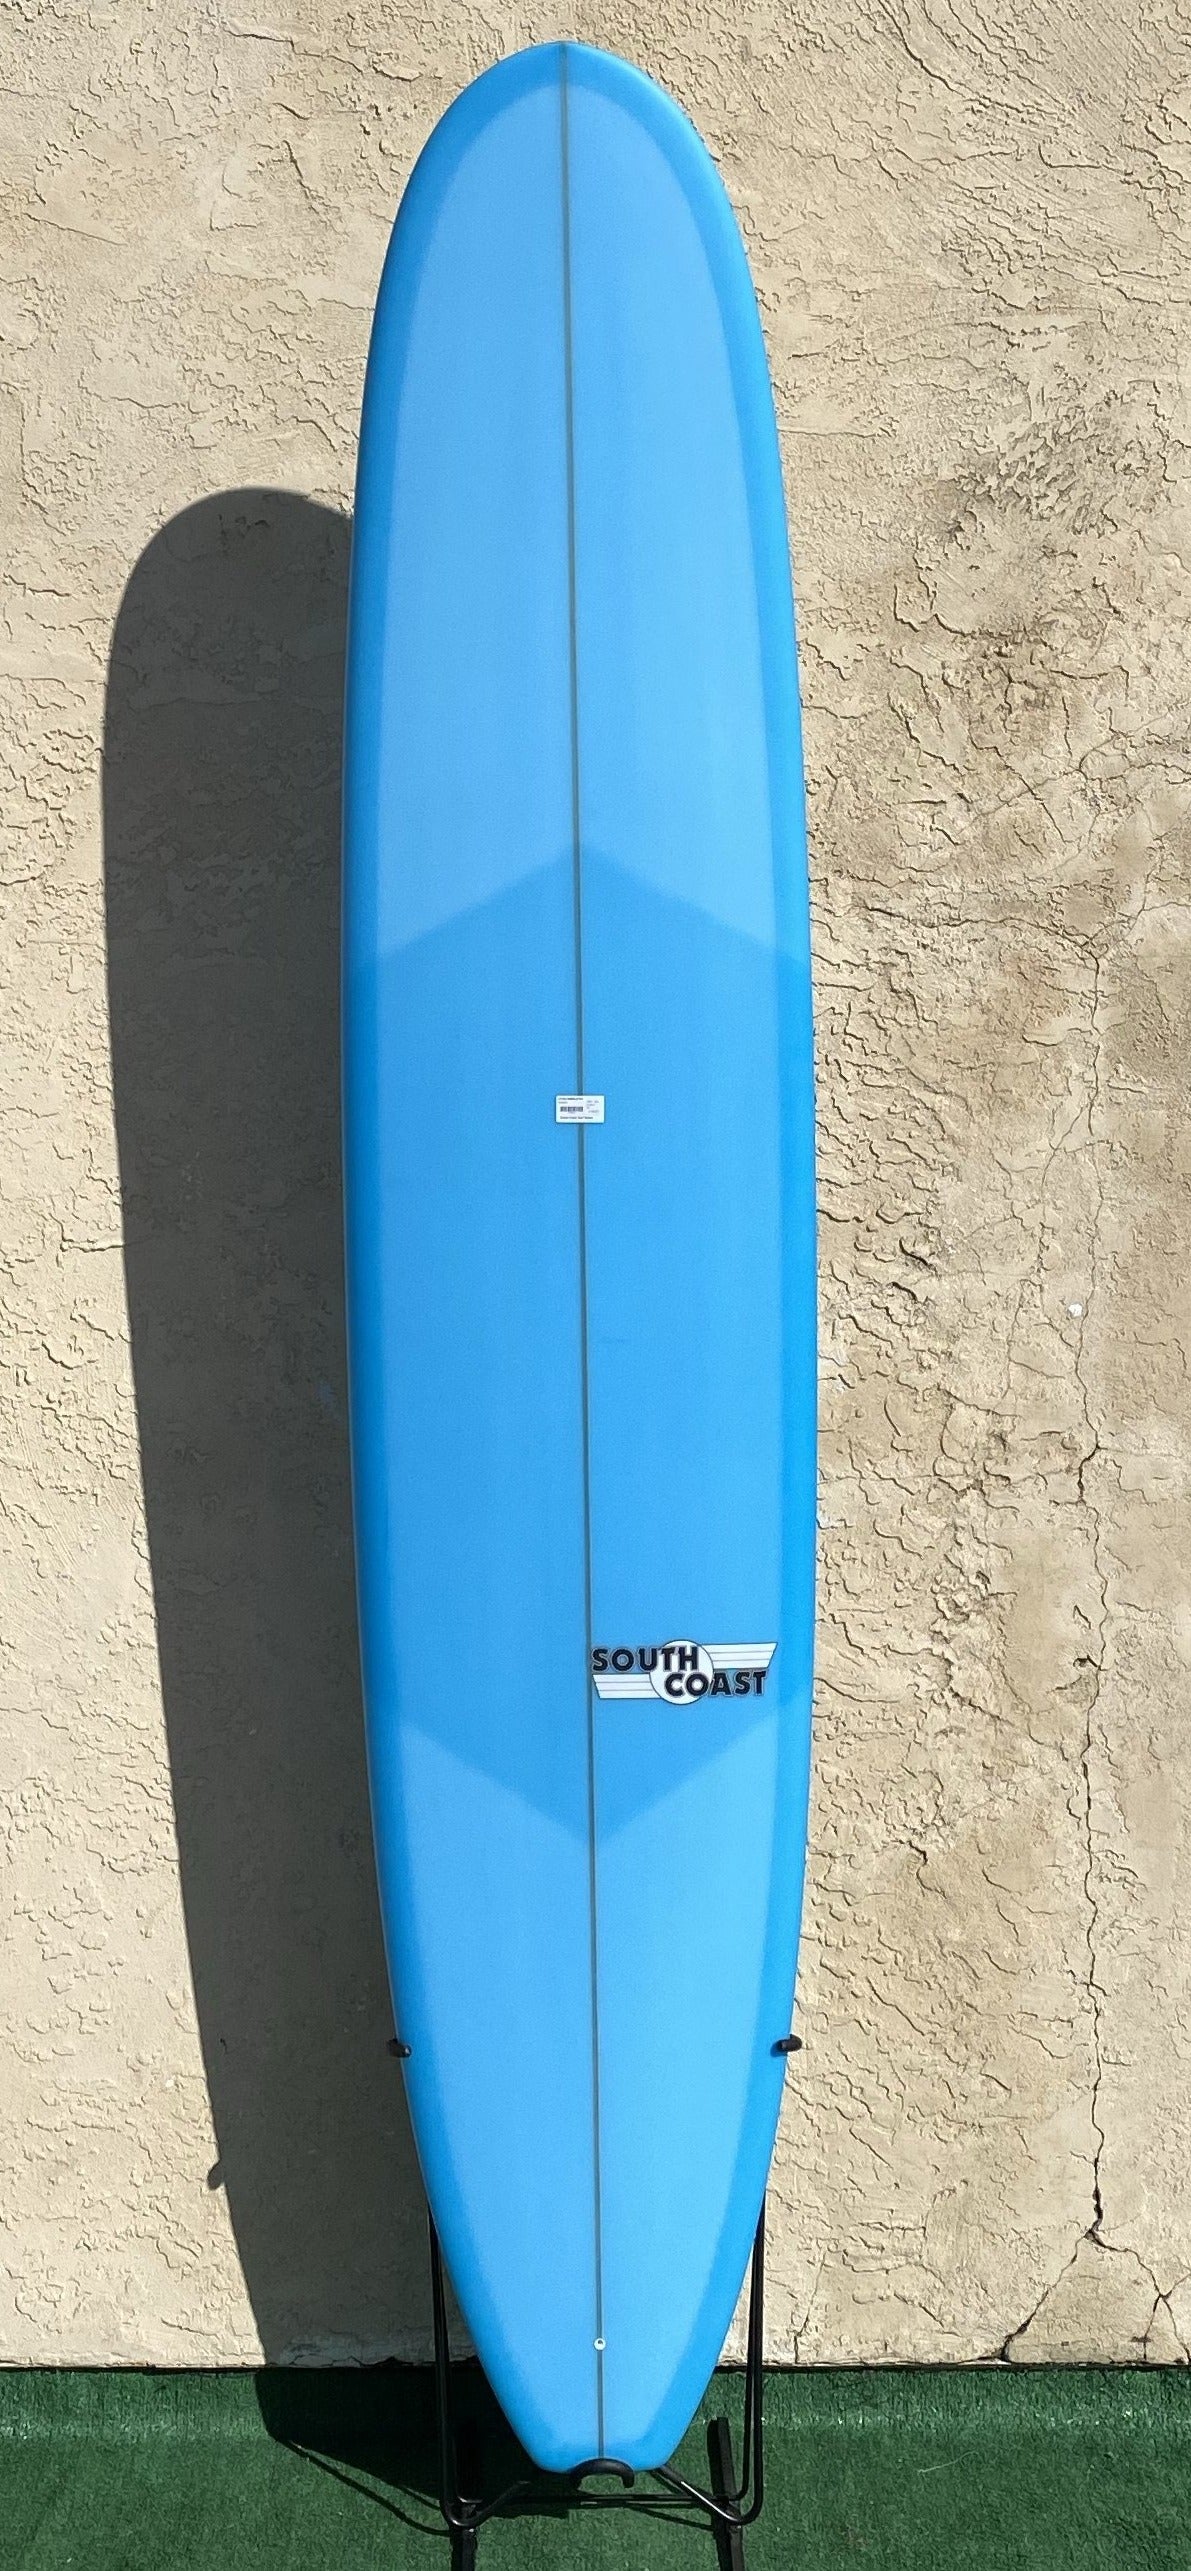 SOUTH COAST MALIBU SURFBOARD 9'6" – South Coast Surf Shops Online